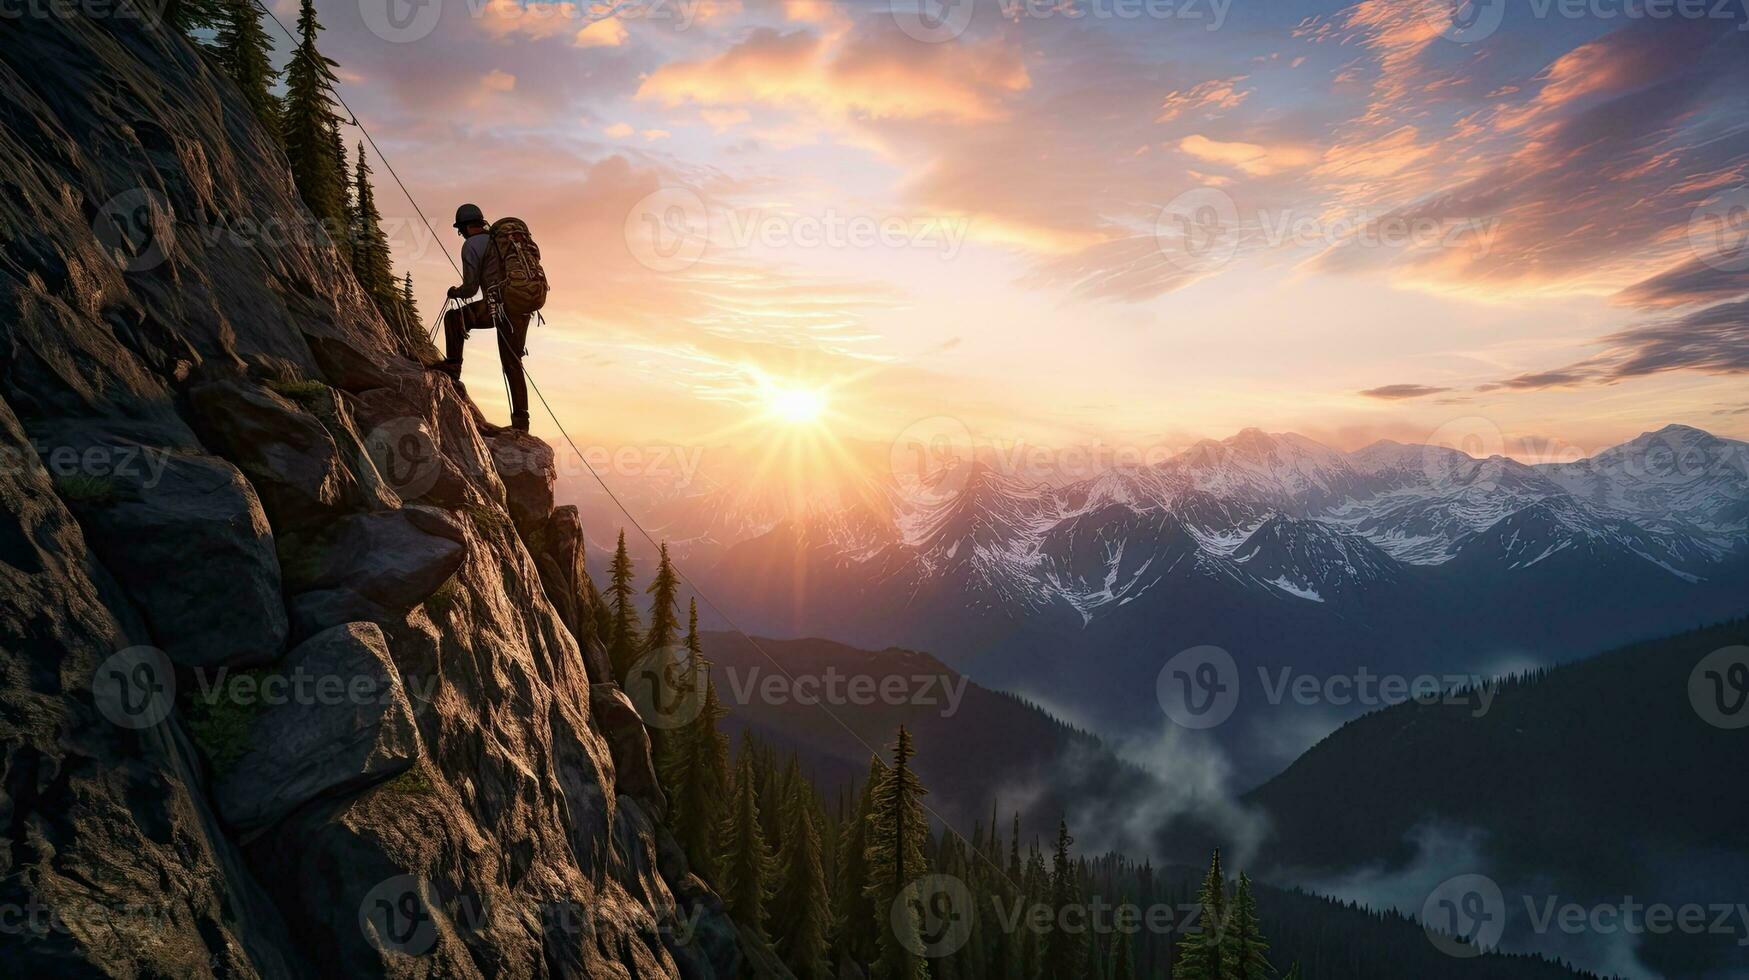 äventyr begrepp fångad i en sammansatt bild av silhuett rappelling från en klippa på färgrik soluppgång eller solnedgång visa upp fantastisk bergen i brittiskt columbia kanada foto